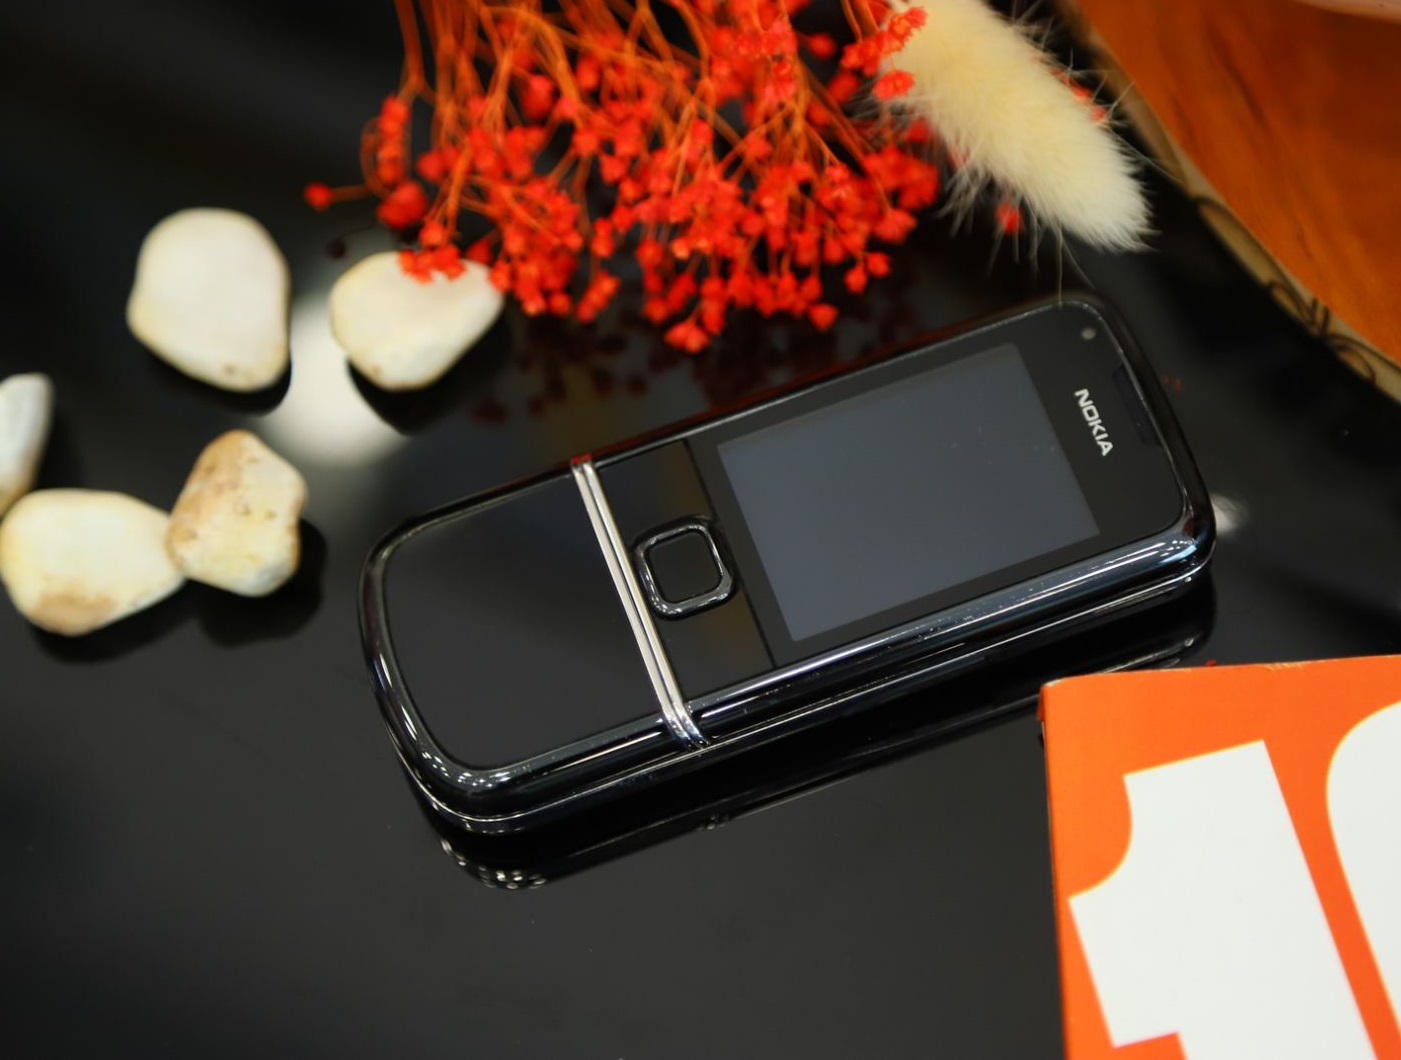 Sapphire Arte Black: Thiết kế tạo nên vẻ đẹp sang trọng và hiện đại cho chiếc điện thoại Sapphire Arte Black. Với màn hình sáng rõ và cảm ứng nhạy, chiếc điện thoại này đang là một trong những lựa chọn hàng đầu cho những người muốn sở hữu điện thoại tốt nhất. Hãy xem hình ảnh để khám phá thêm về Sapphire Arte Black.